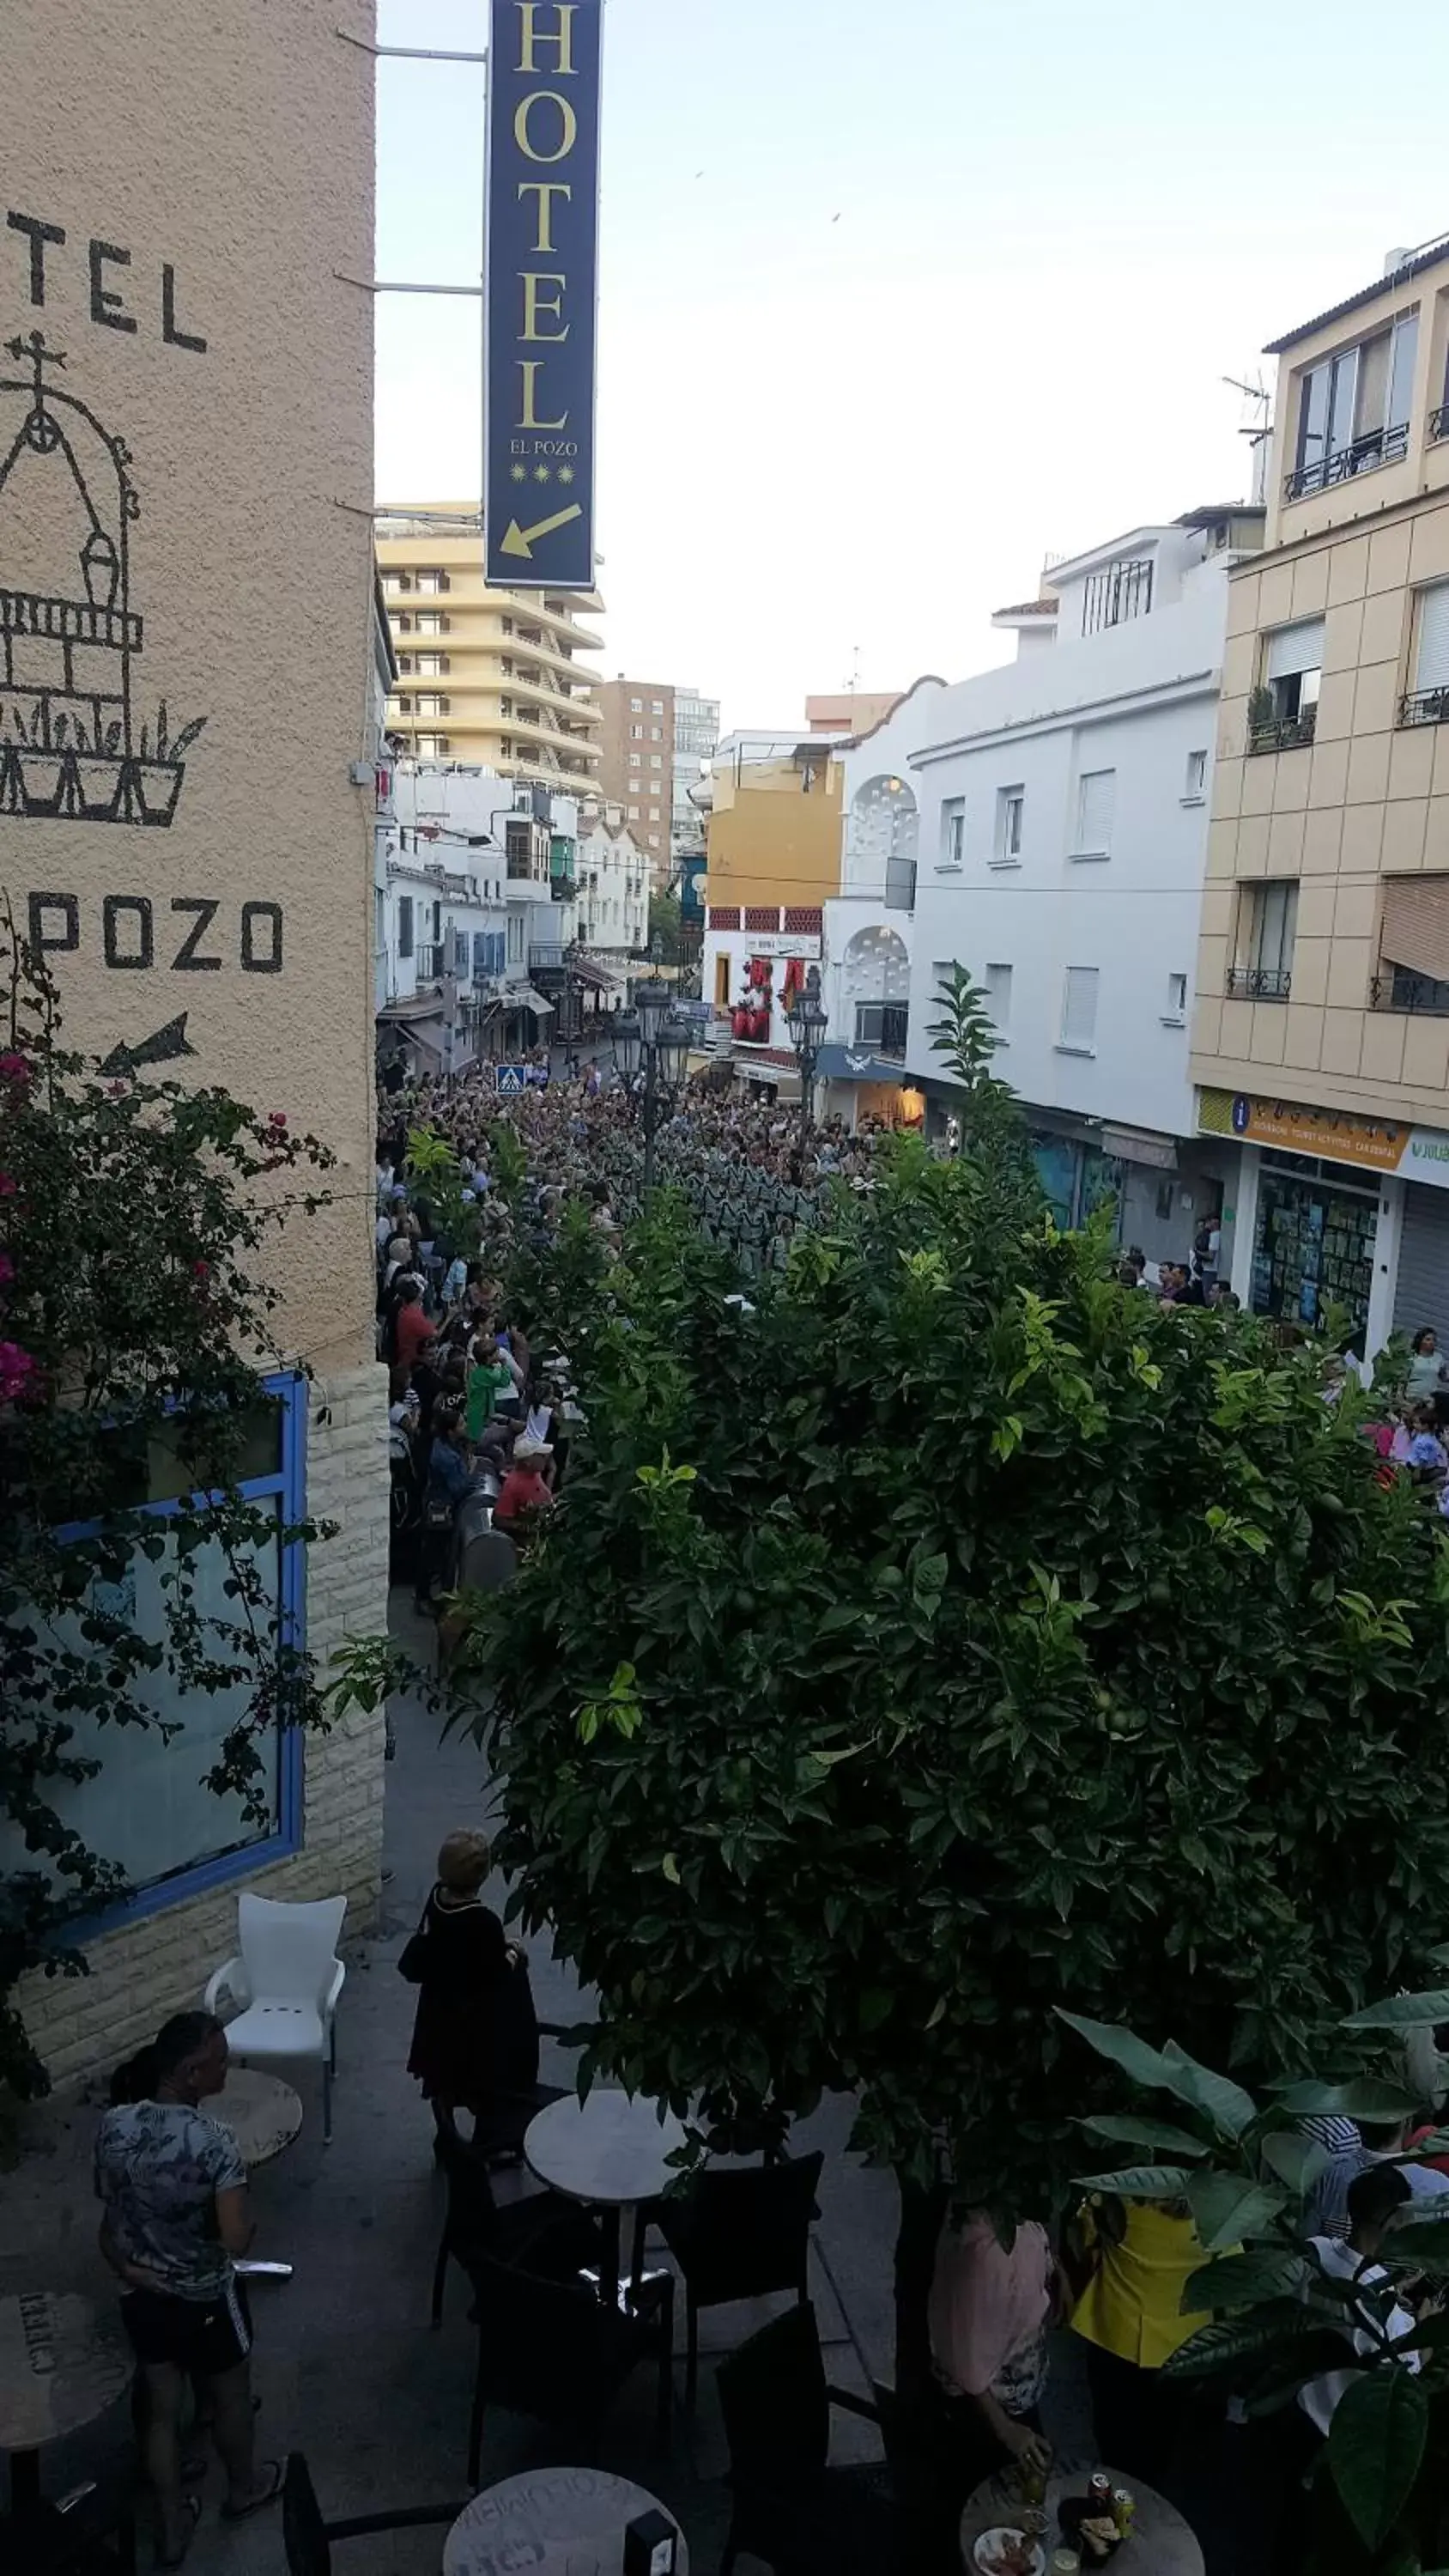 Street view, Neighborhood in Hotel El Pozo